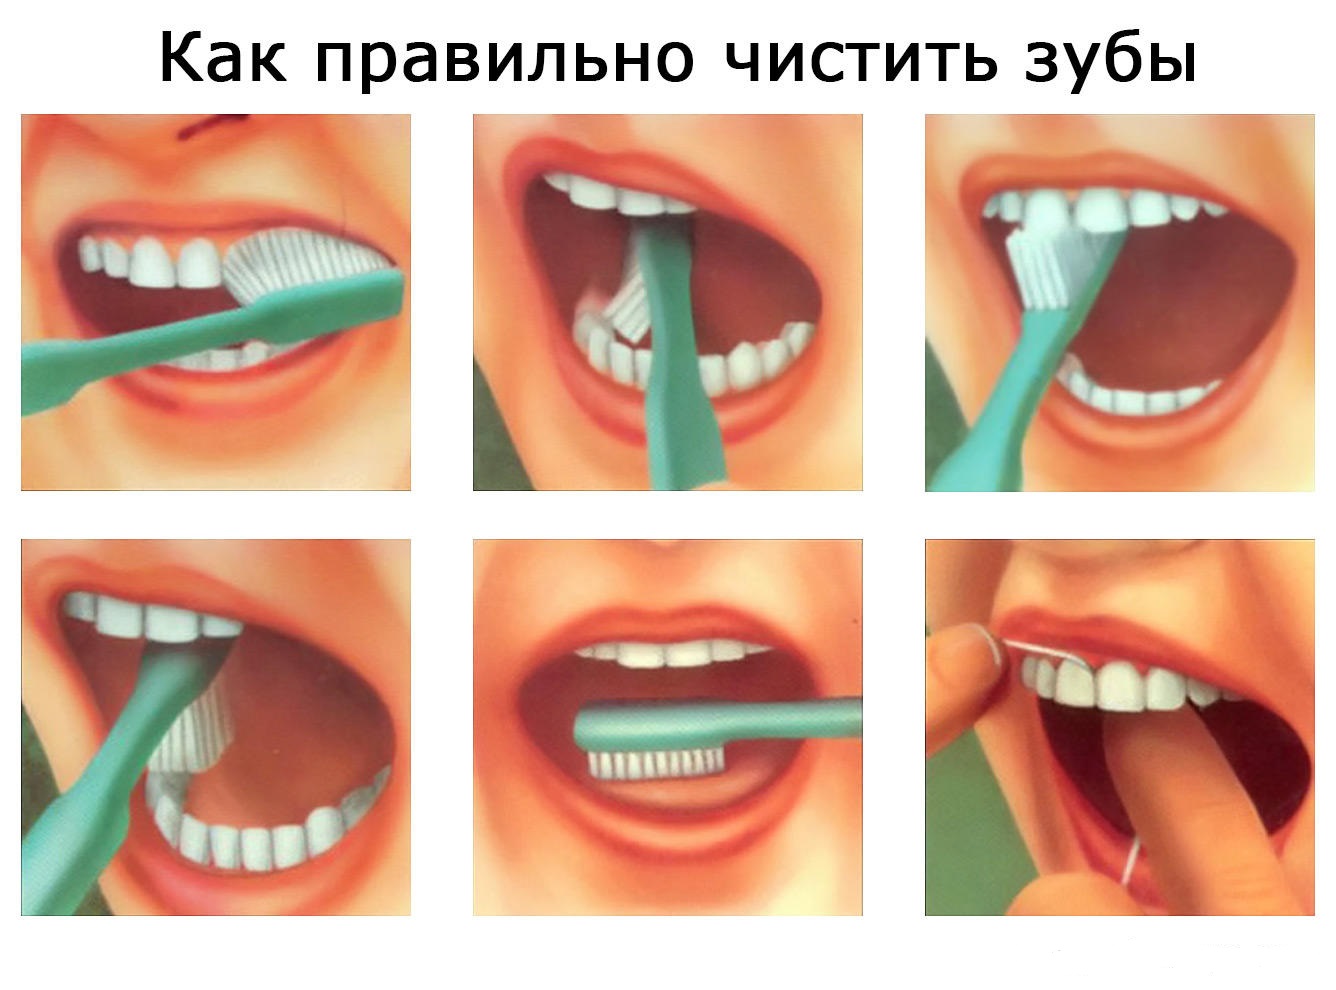 Чистка зубов вред. Как правильно чистить зубы. КСК праивльно чистить щубы. Как правильно Чисть зубы. Правильная чистка зубов.